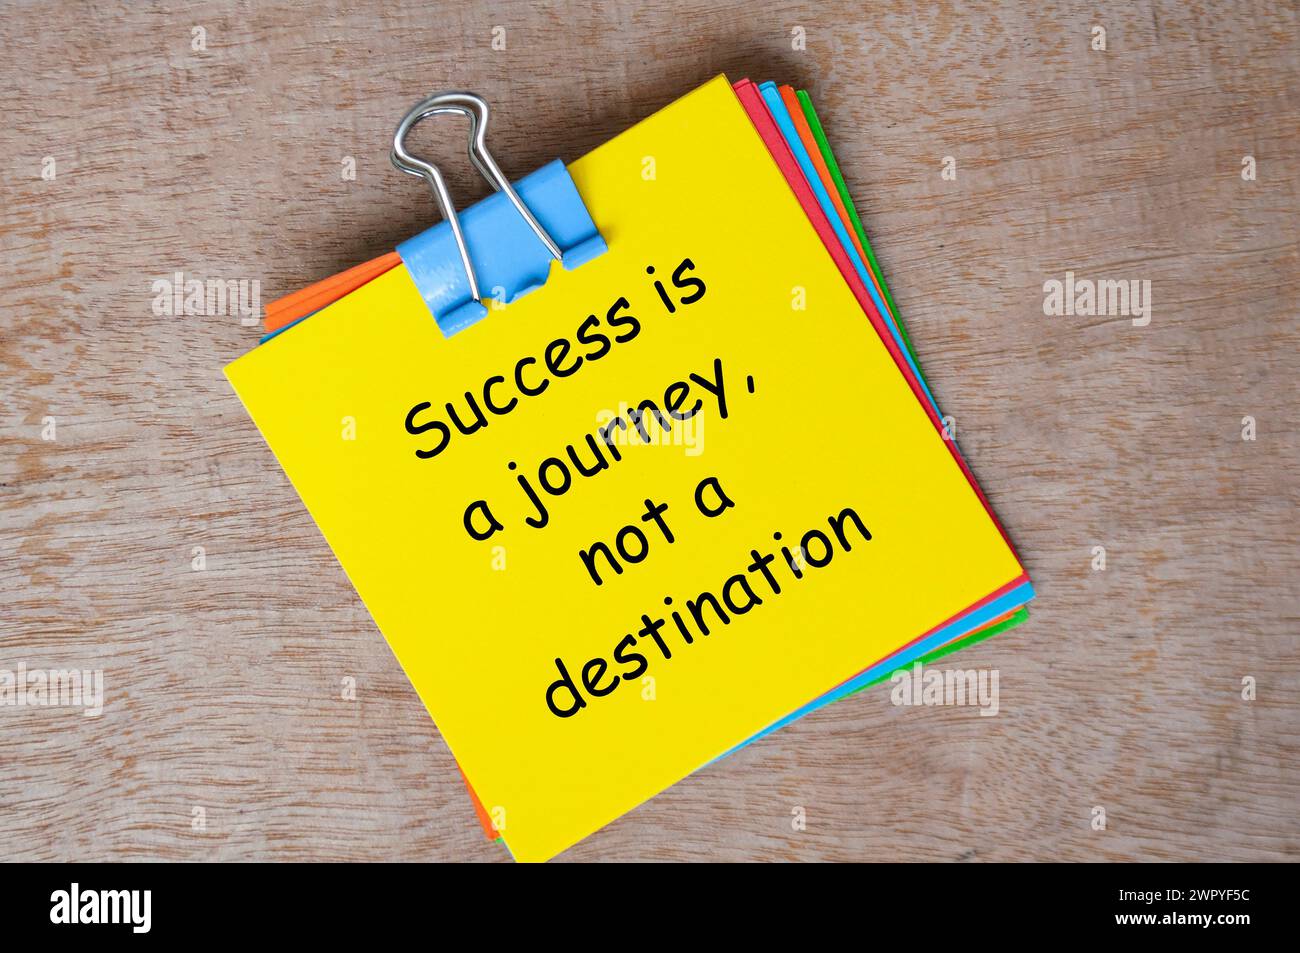 Le succès est un voyage, pas un texte de destination sur le bloc-notes jaune. Banque D'Images